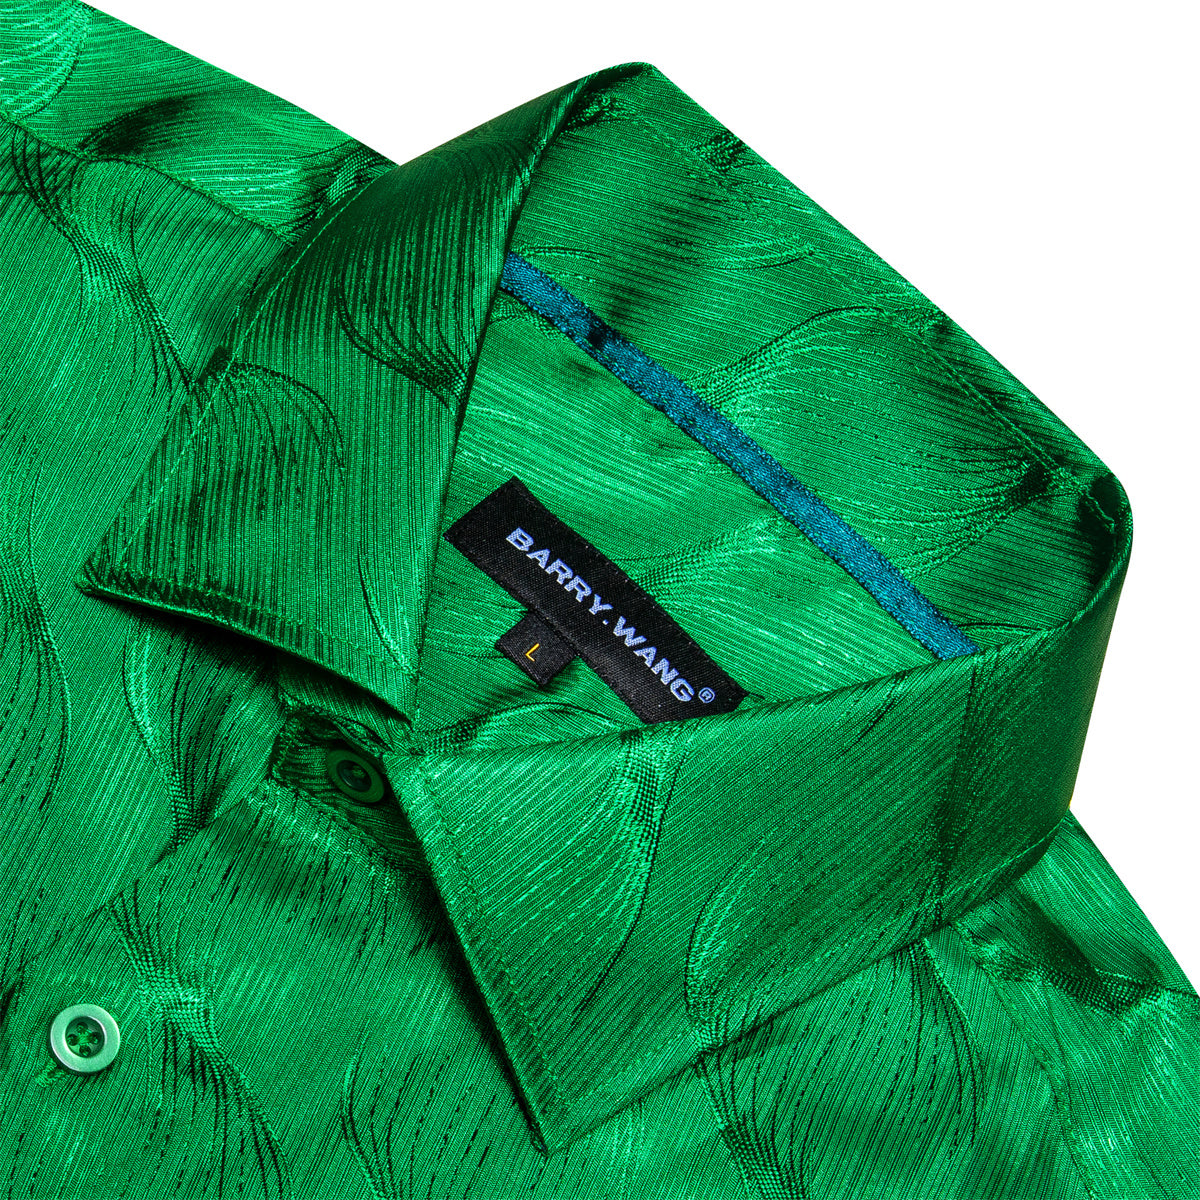 Barry.wang Cobalt Green Ripple Silk Men's Shirt